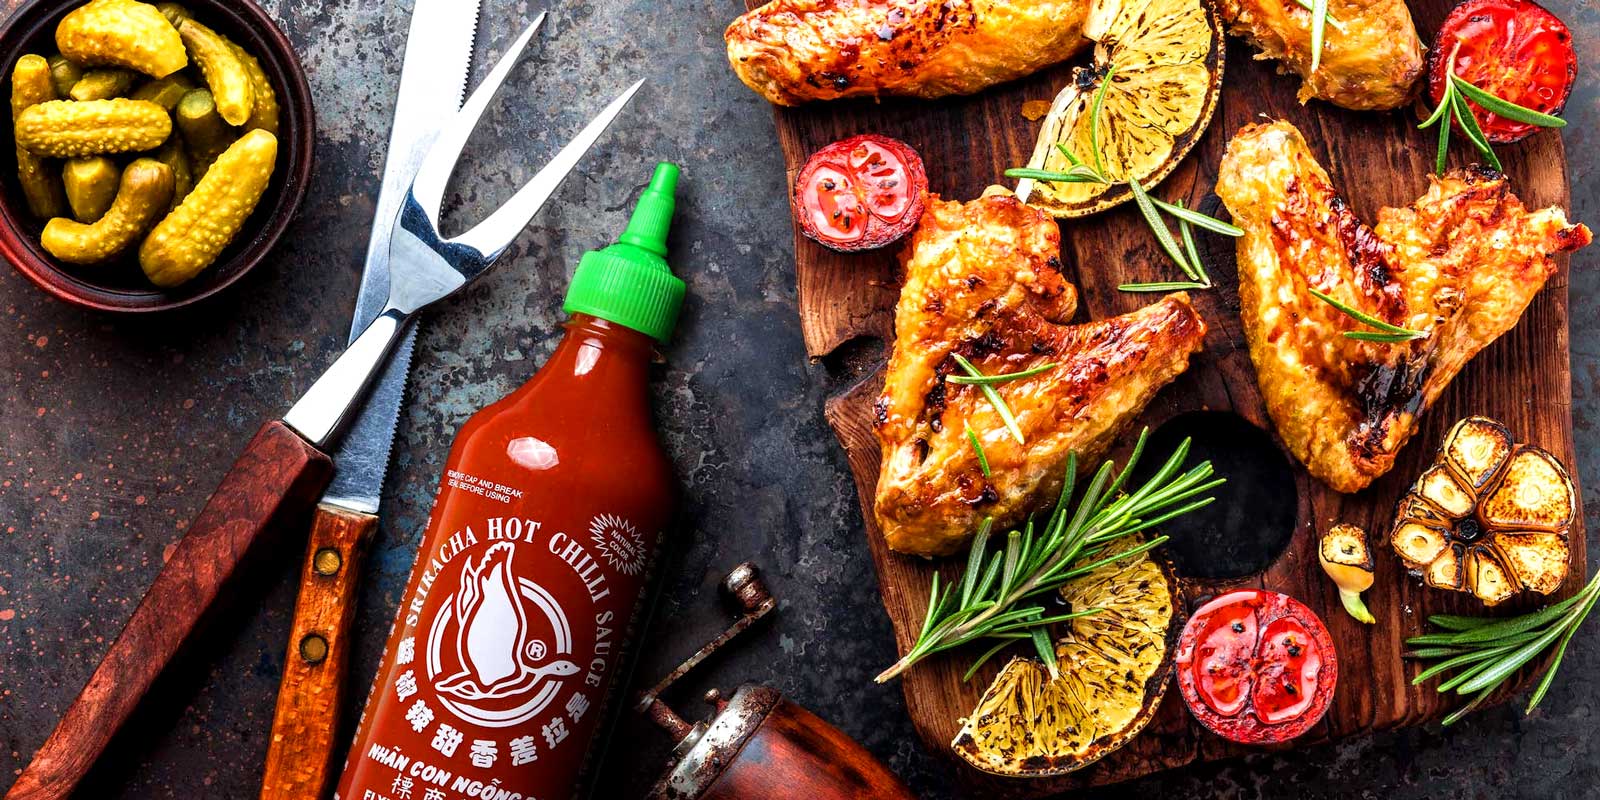 Sriracha sosur fra Flying Goose Aridh 1999 var fyrsta flokks tailenska sosumerkidh okkar, Flying Goose, hleypt af stokkunum medh thadh adh markmidhi adh haekka stadhalinn a heitum sosum og veita matgaedhingum hamarks bragdhefni til adh baeta vidh alls kyns godhgaeti.